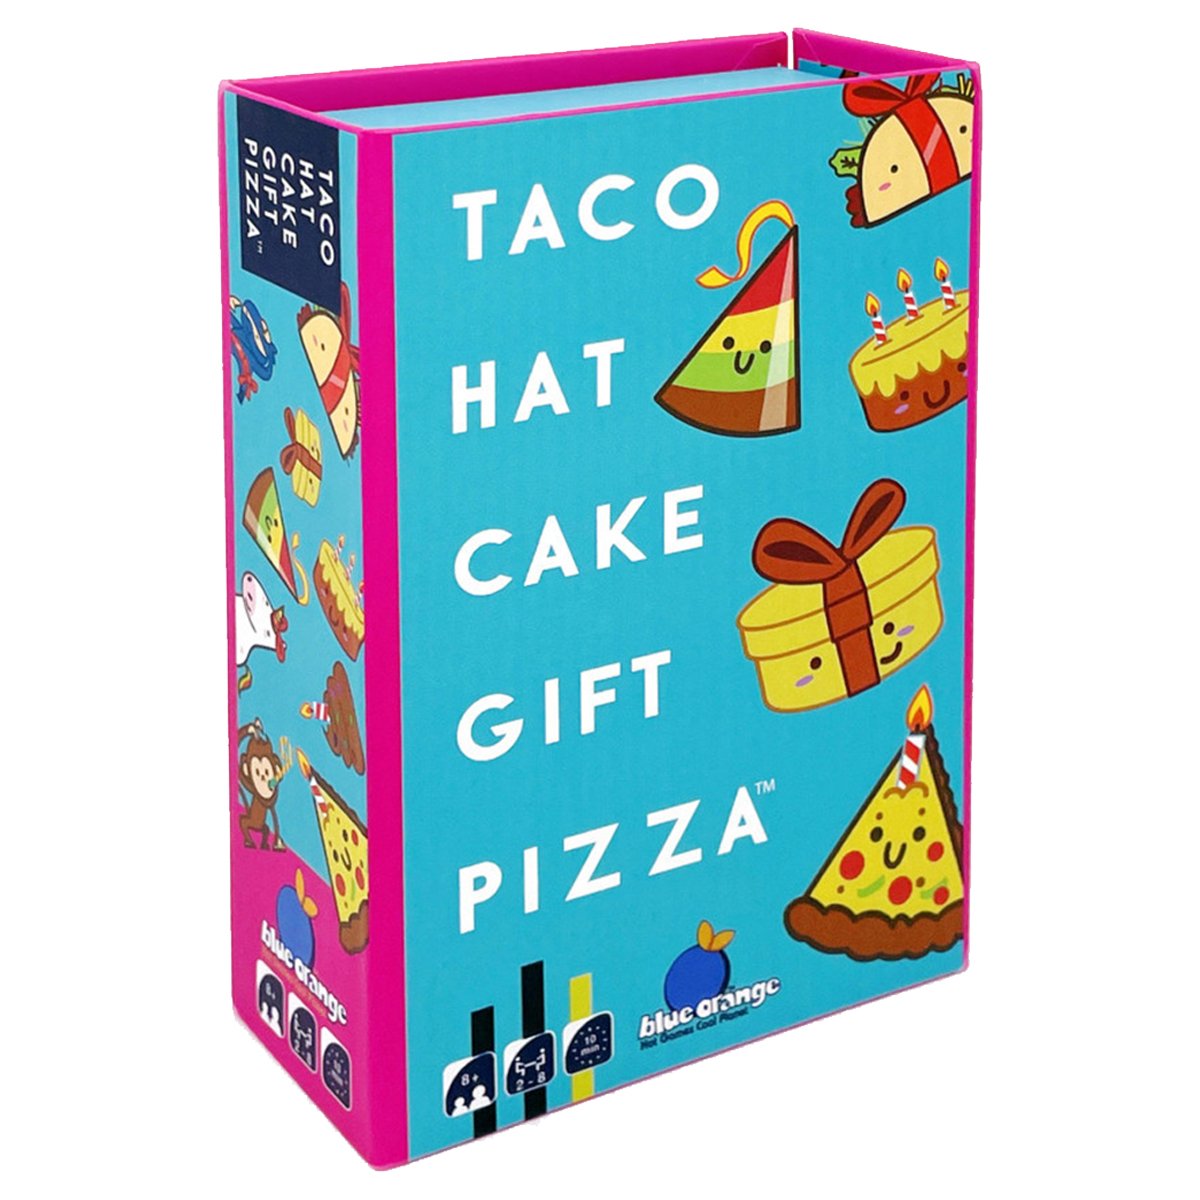 Taco Hat Cake Gift Pizza - Kaartspel